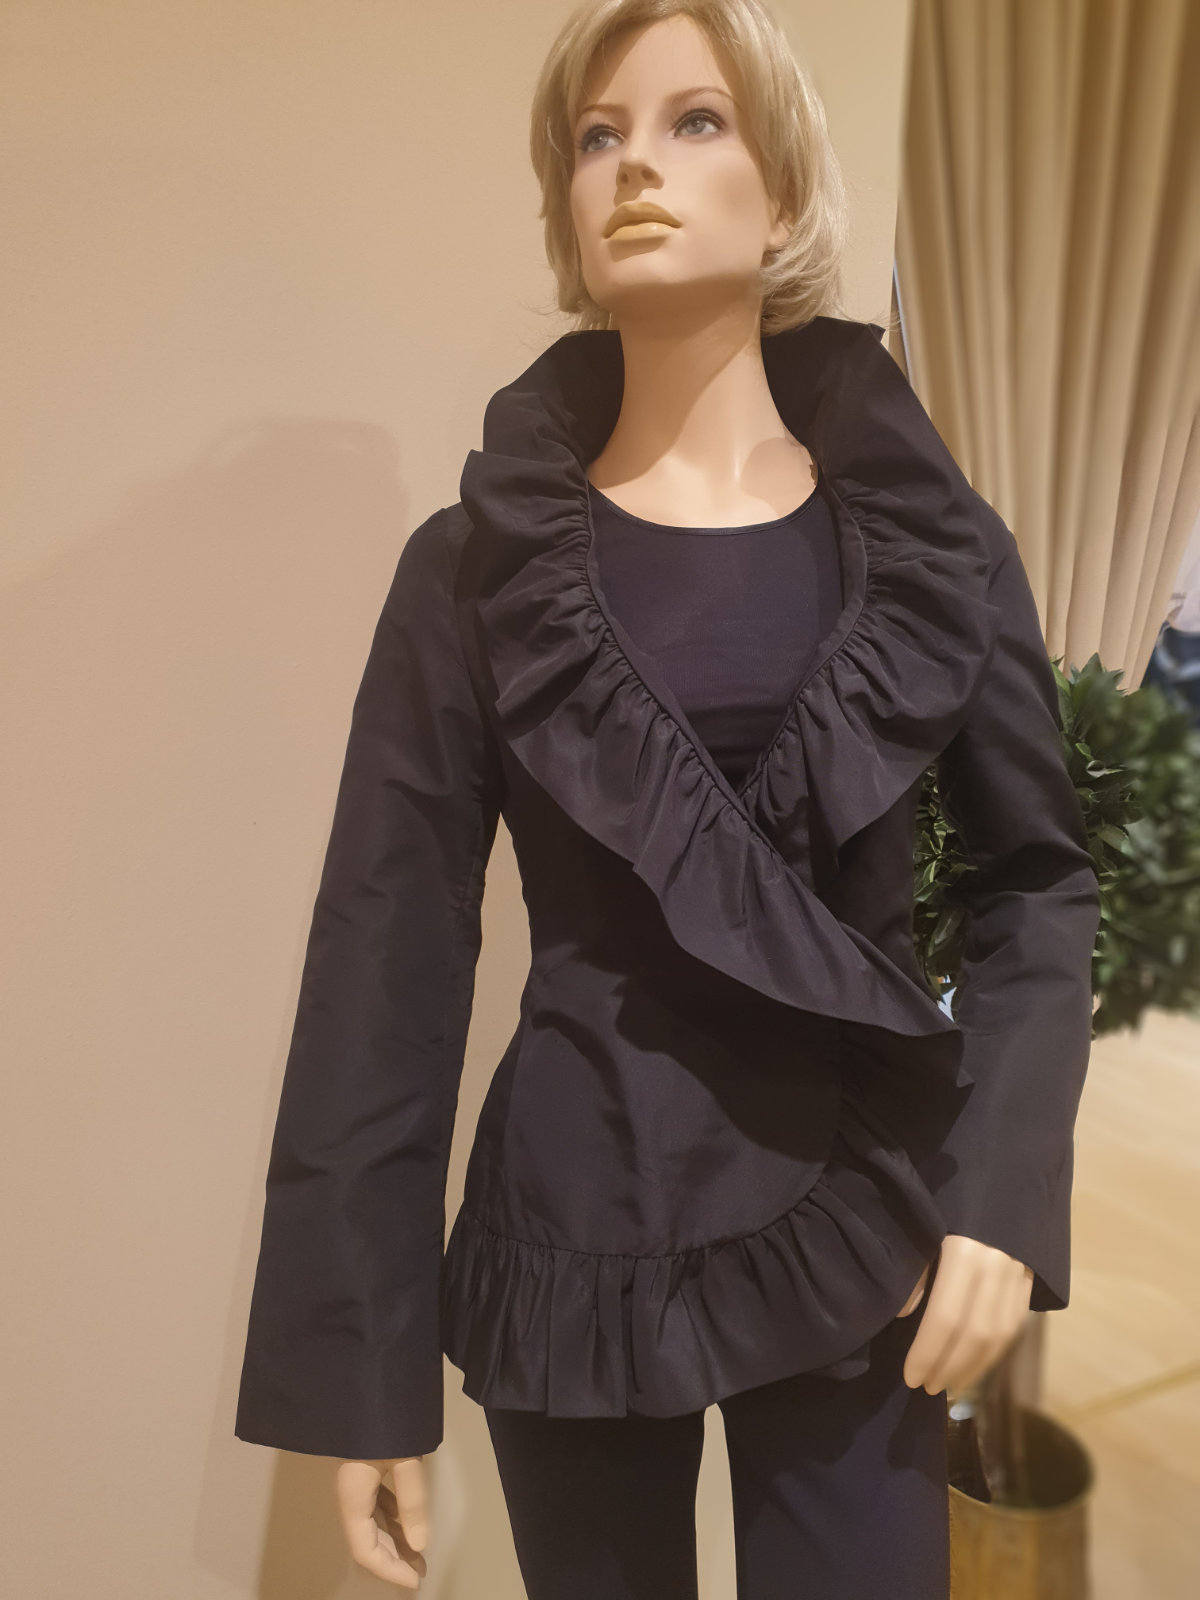 Dolce & Gabbana Jacke, kurzer Damenmantel, in schwarz, mit Rüschen am Ausschnitt, in Größe 40, Frontalansicht 1.